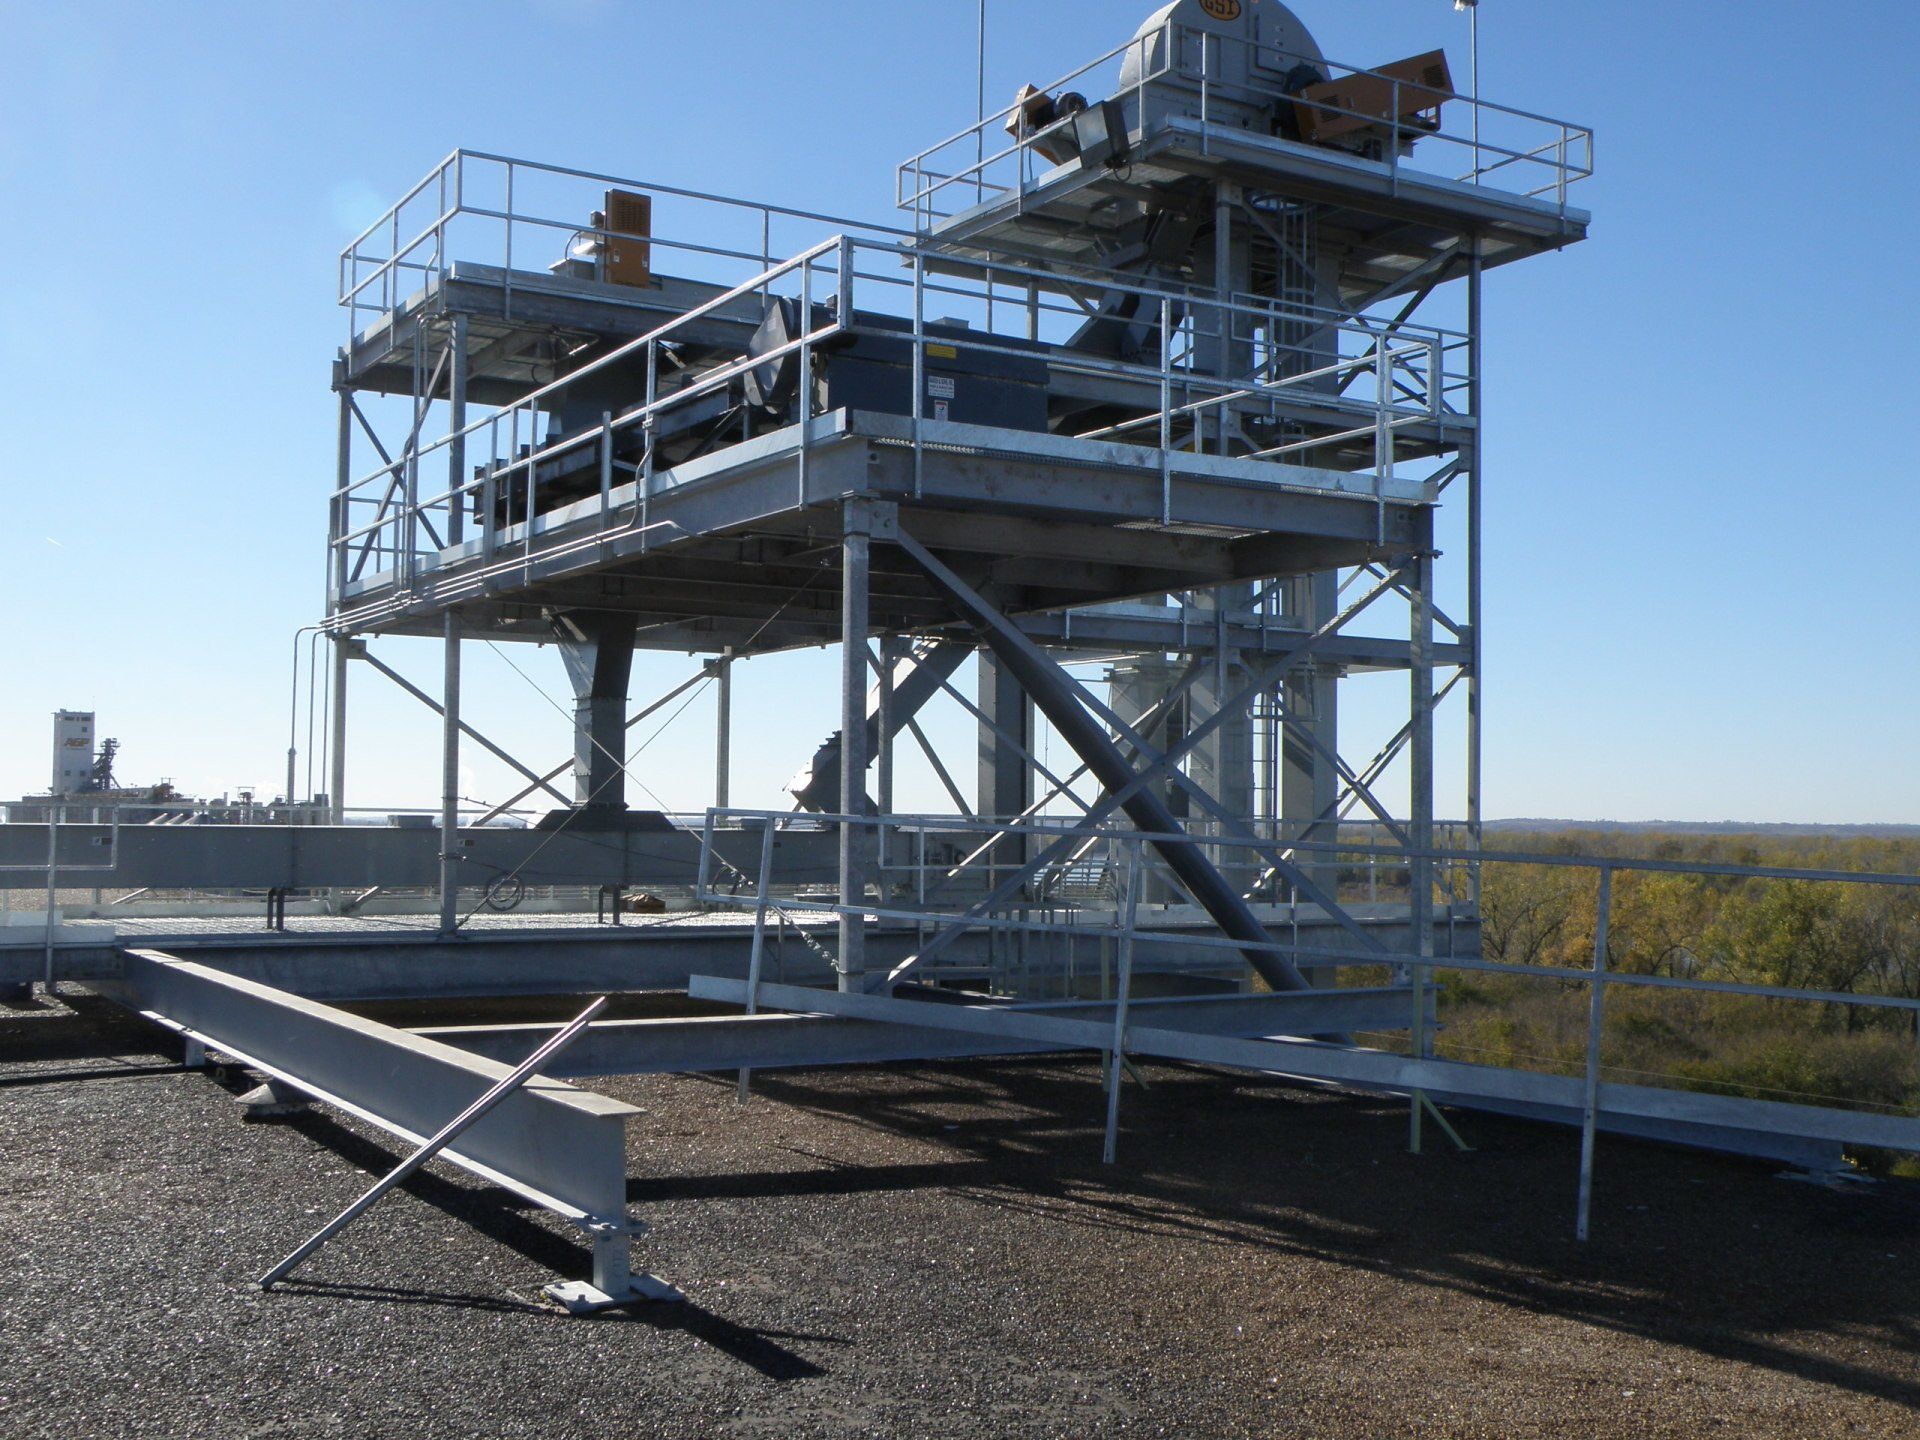 Metal Grain Platform — Grain Facility in Cedar Rapids, IA